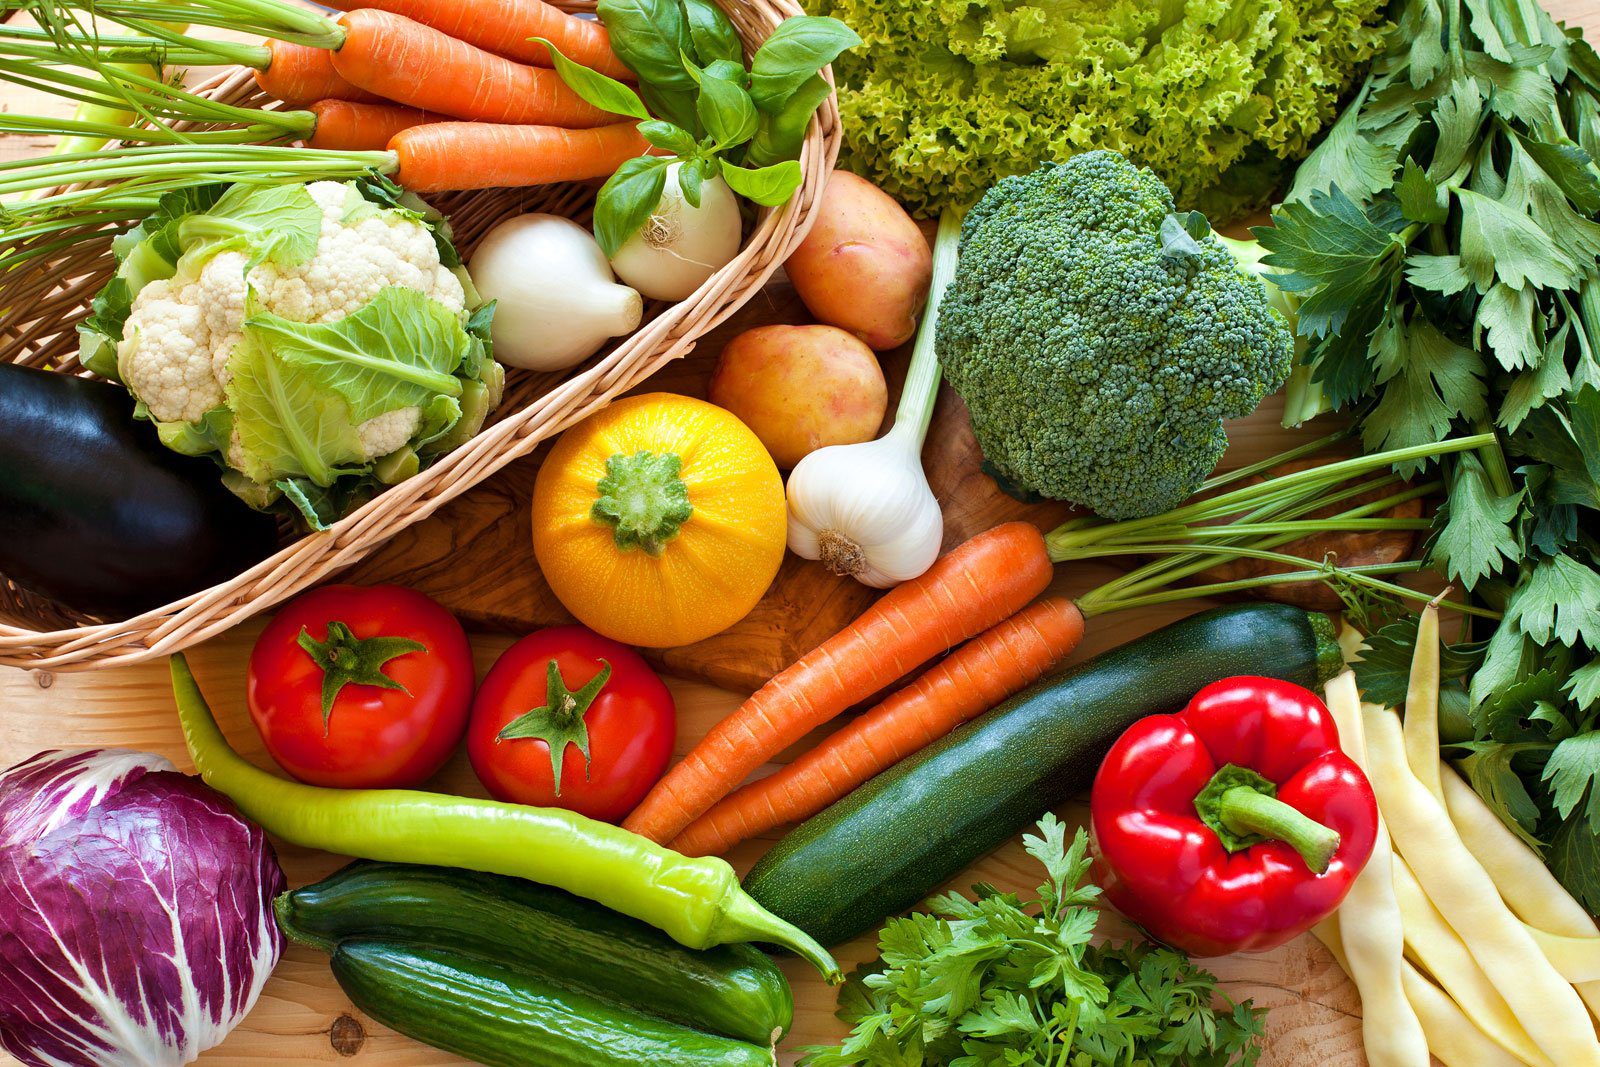 مصرف روزانه سبزیجات، سلامت کوهنوردان را تضمین می کند - پایگاه خبری بام |  Bam News Agency